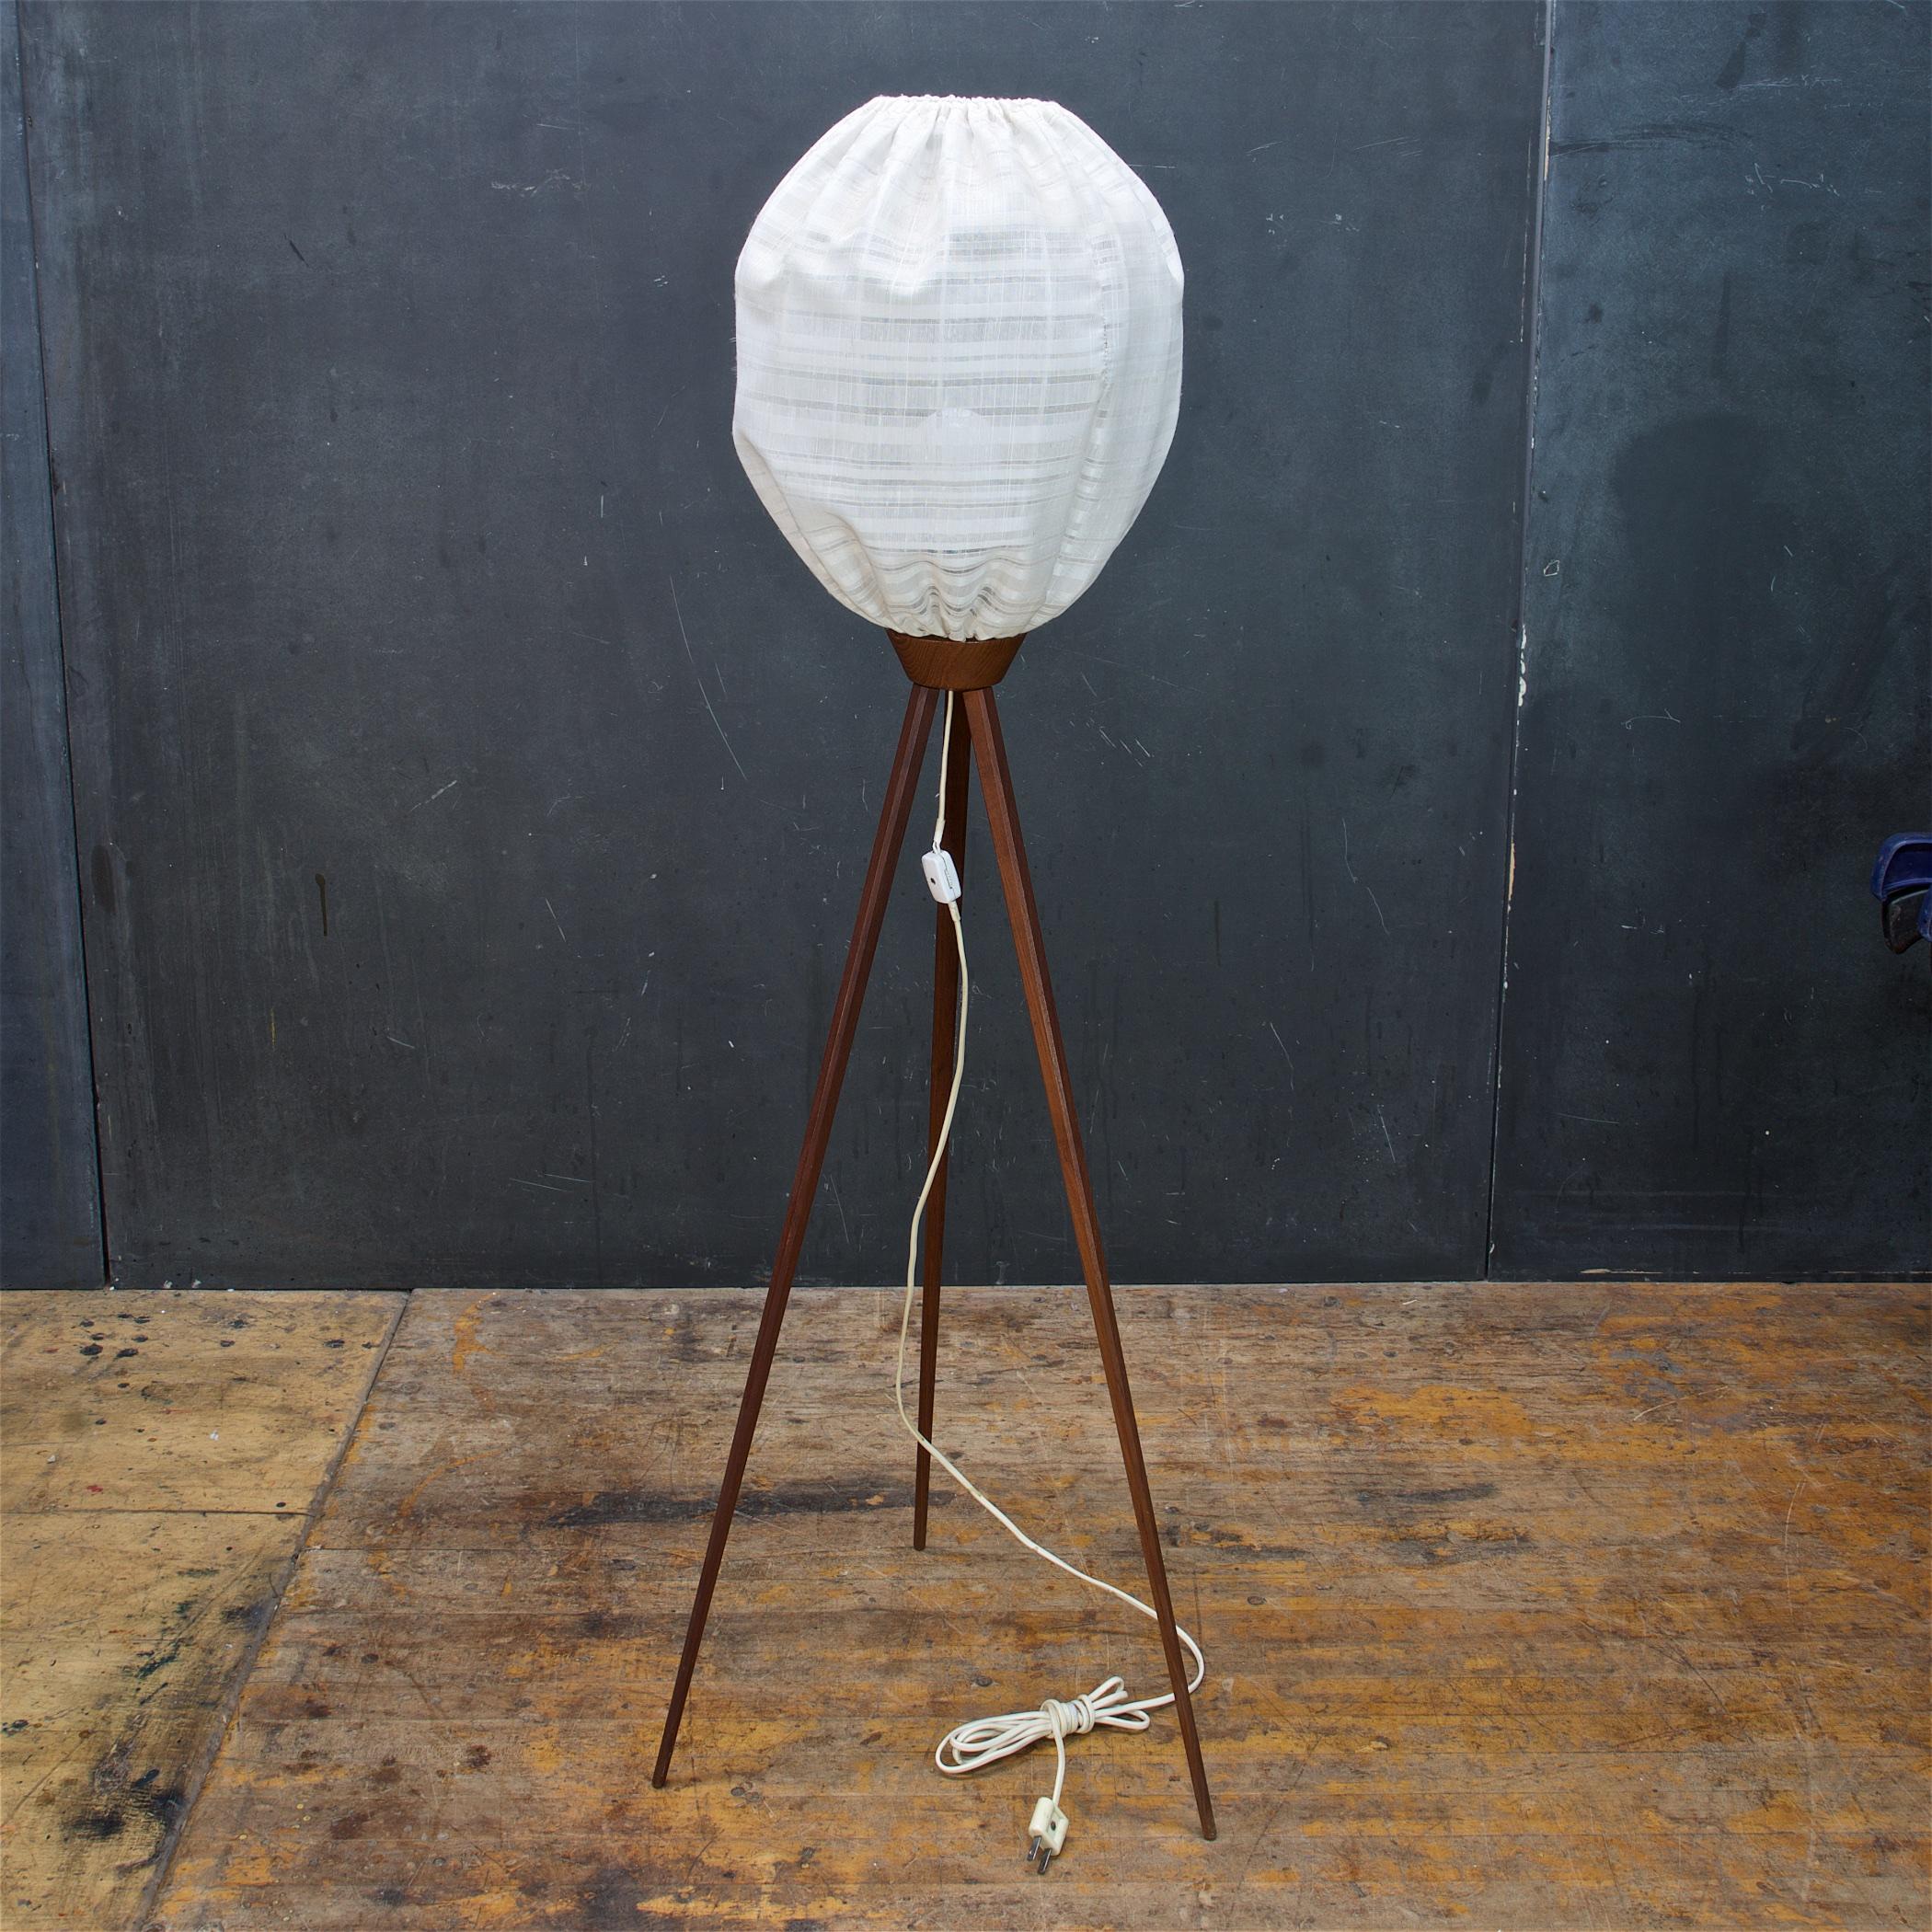 Scandinavian Modern Danish Mid-Century Teak Tripod Floor Lamp 1960s Vintage Ufo Bubble Lantern Luxus